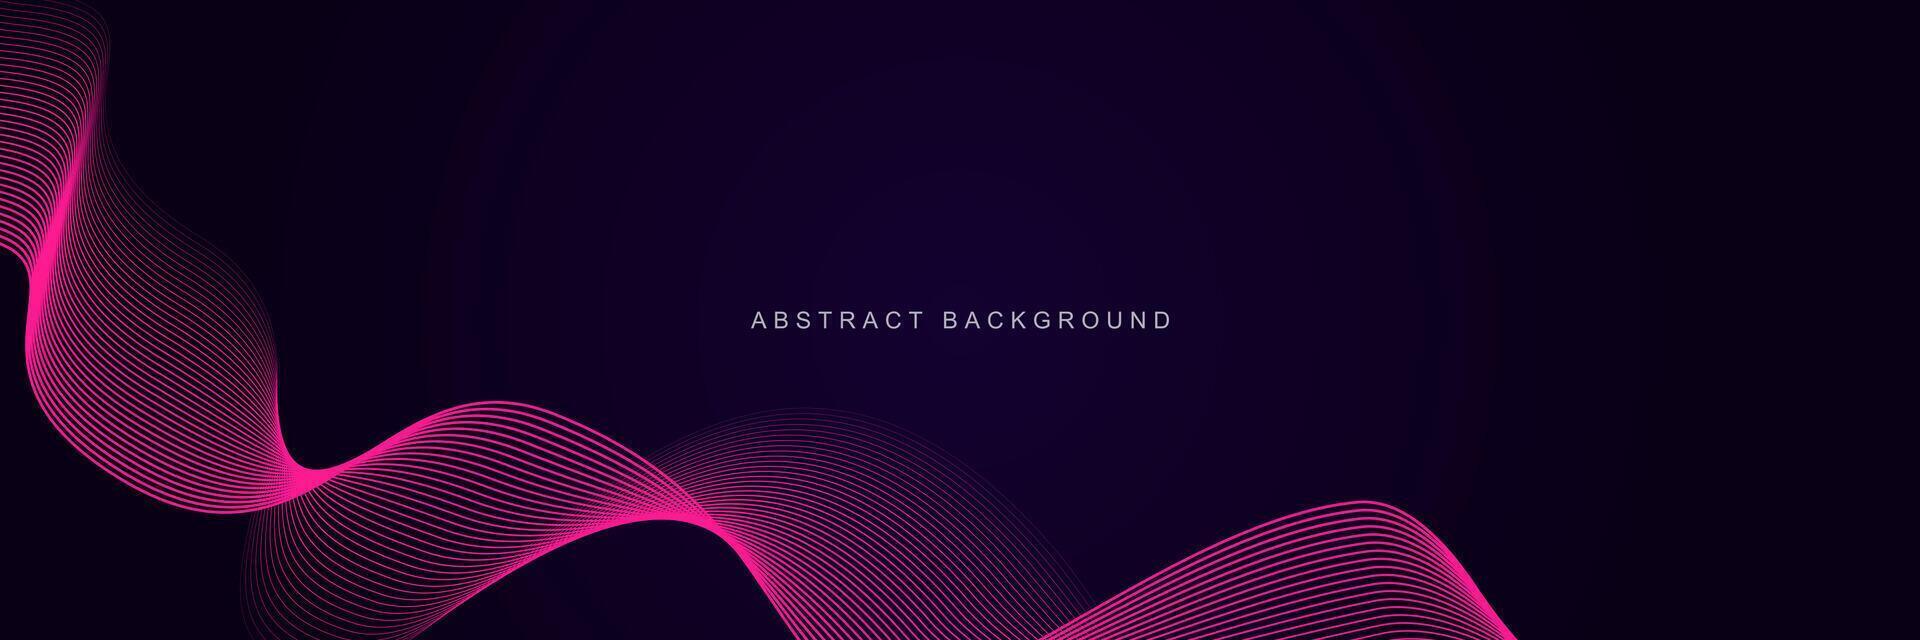 donker Purper abstract achtergrond met gloeiend golven. glimmend lijnen ontwerp element. modern roze blauw helling vloeiende Golf lijnen. futuristische technologie concept. illustratie vector